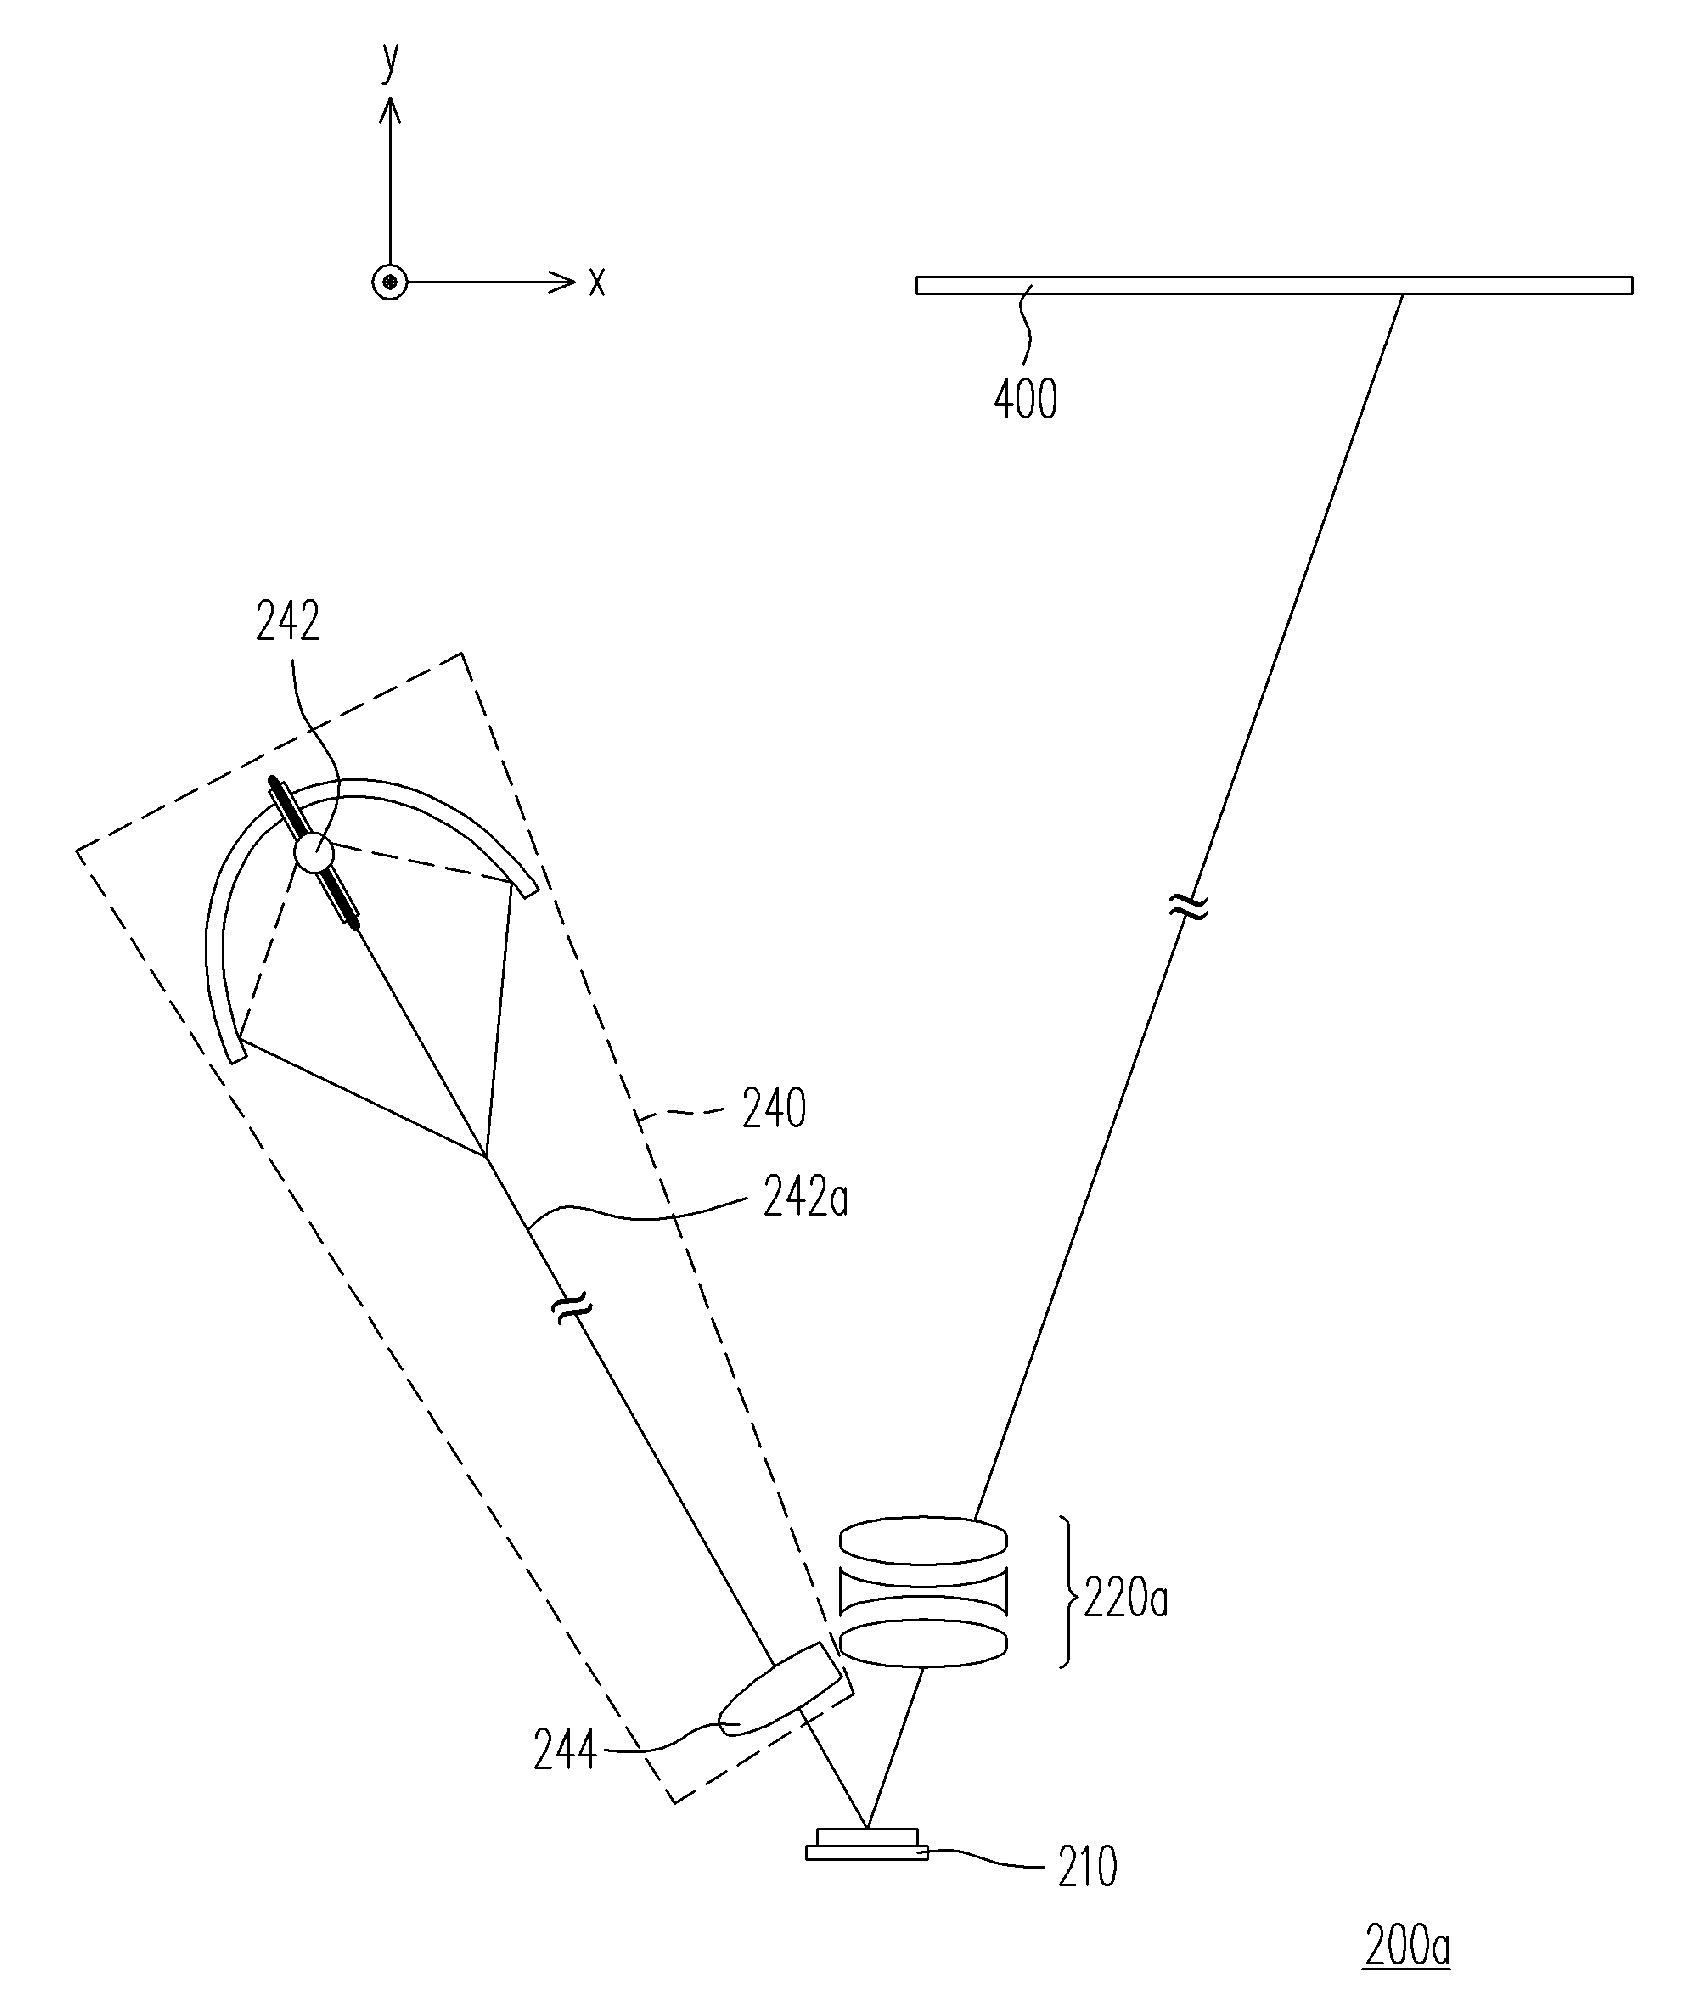 Single reflective light valve projection device